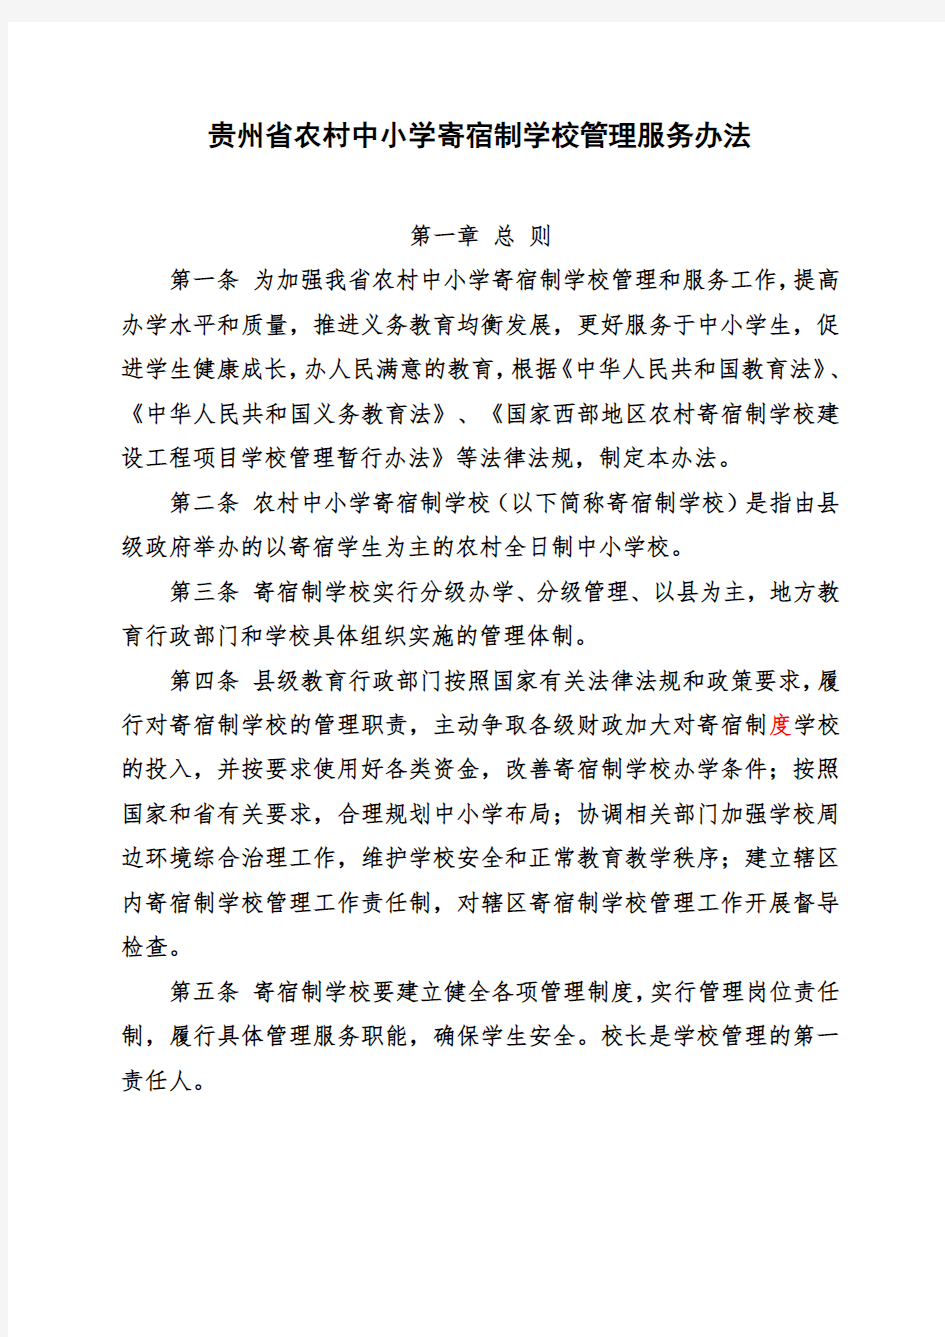 贵州省农村中小学寄宿制学校管理服务办法(征求意见)